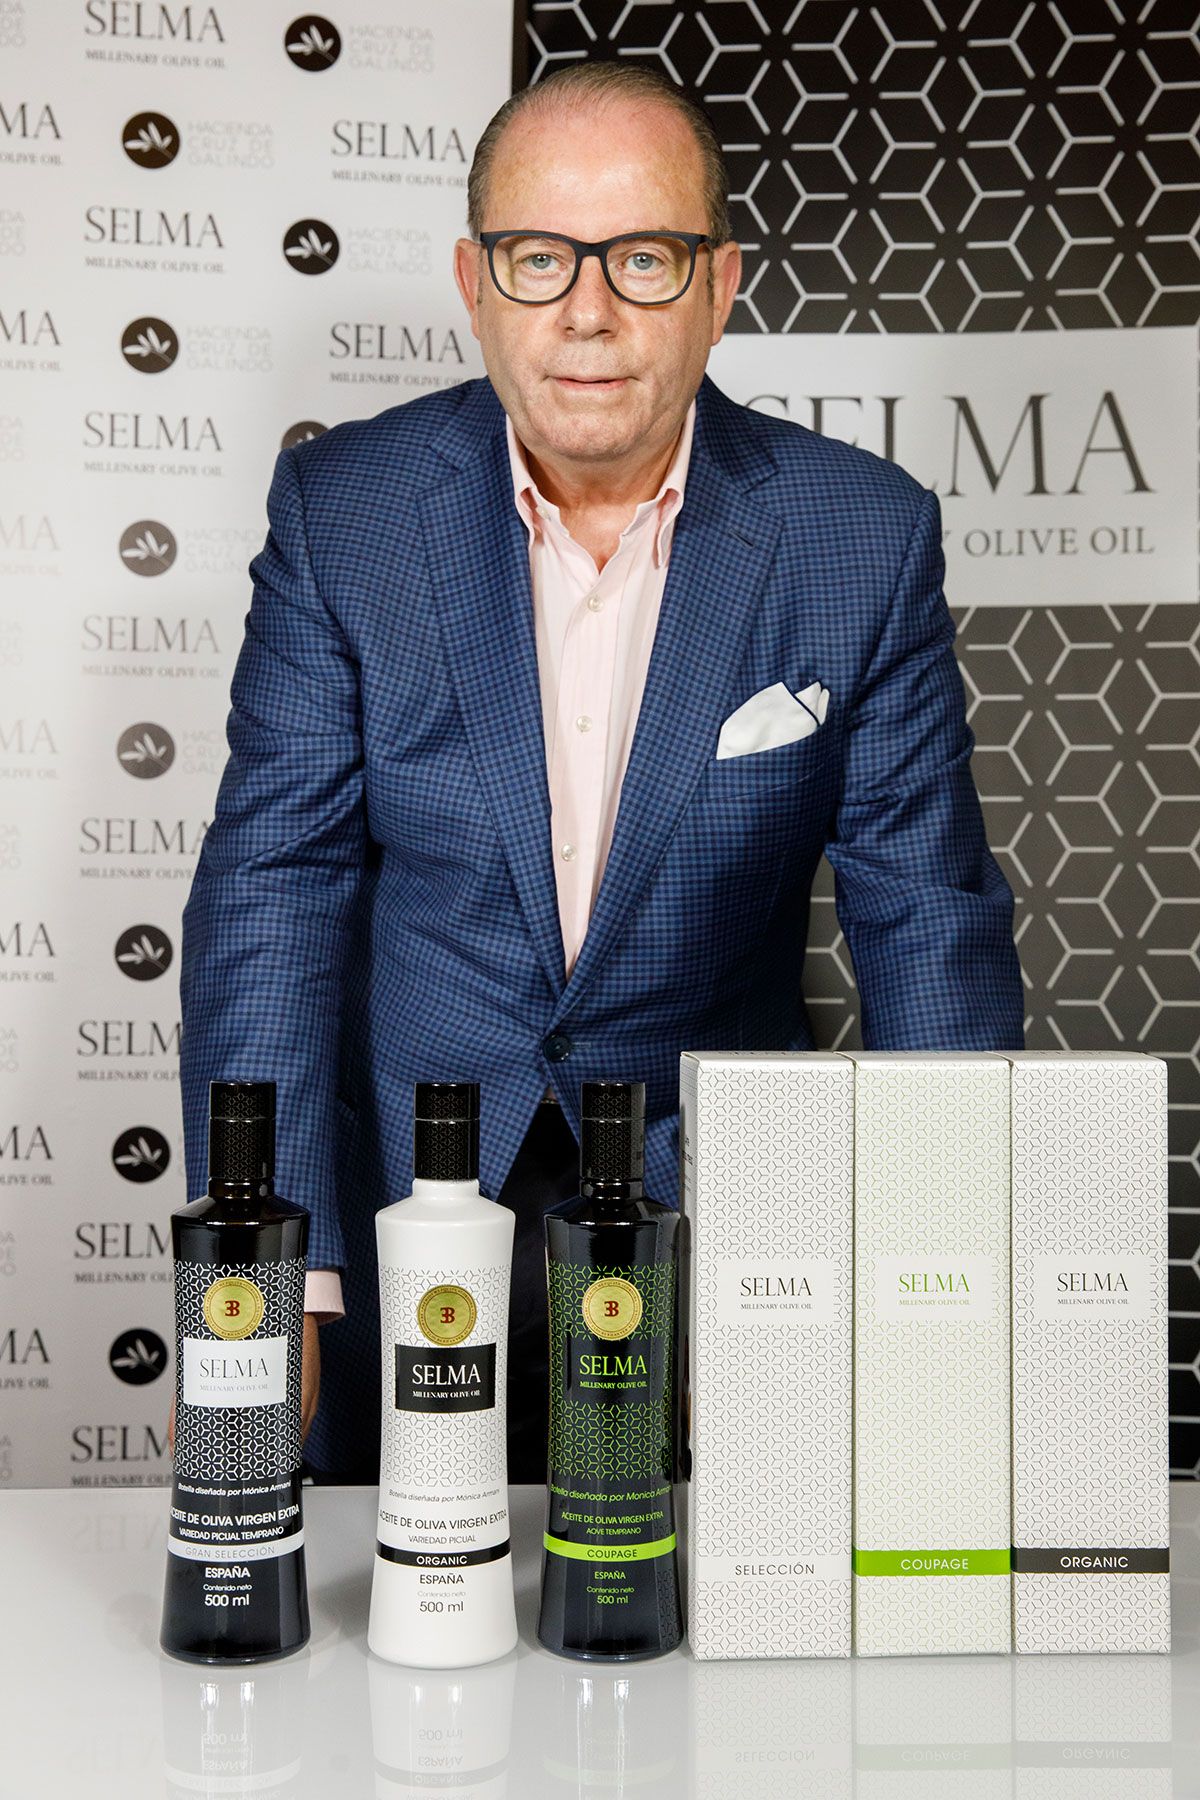 SELMA Millenary Olive Oil fue fundado por Joaquín Selma